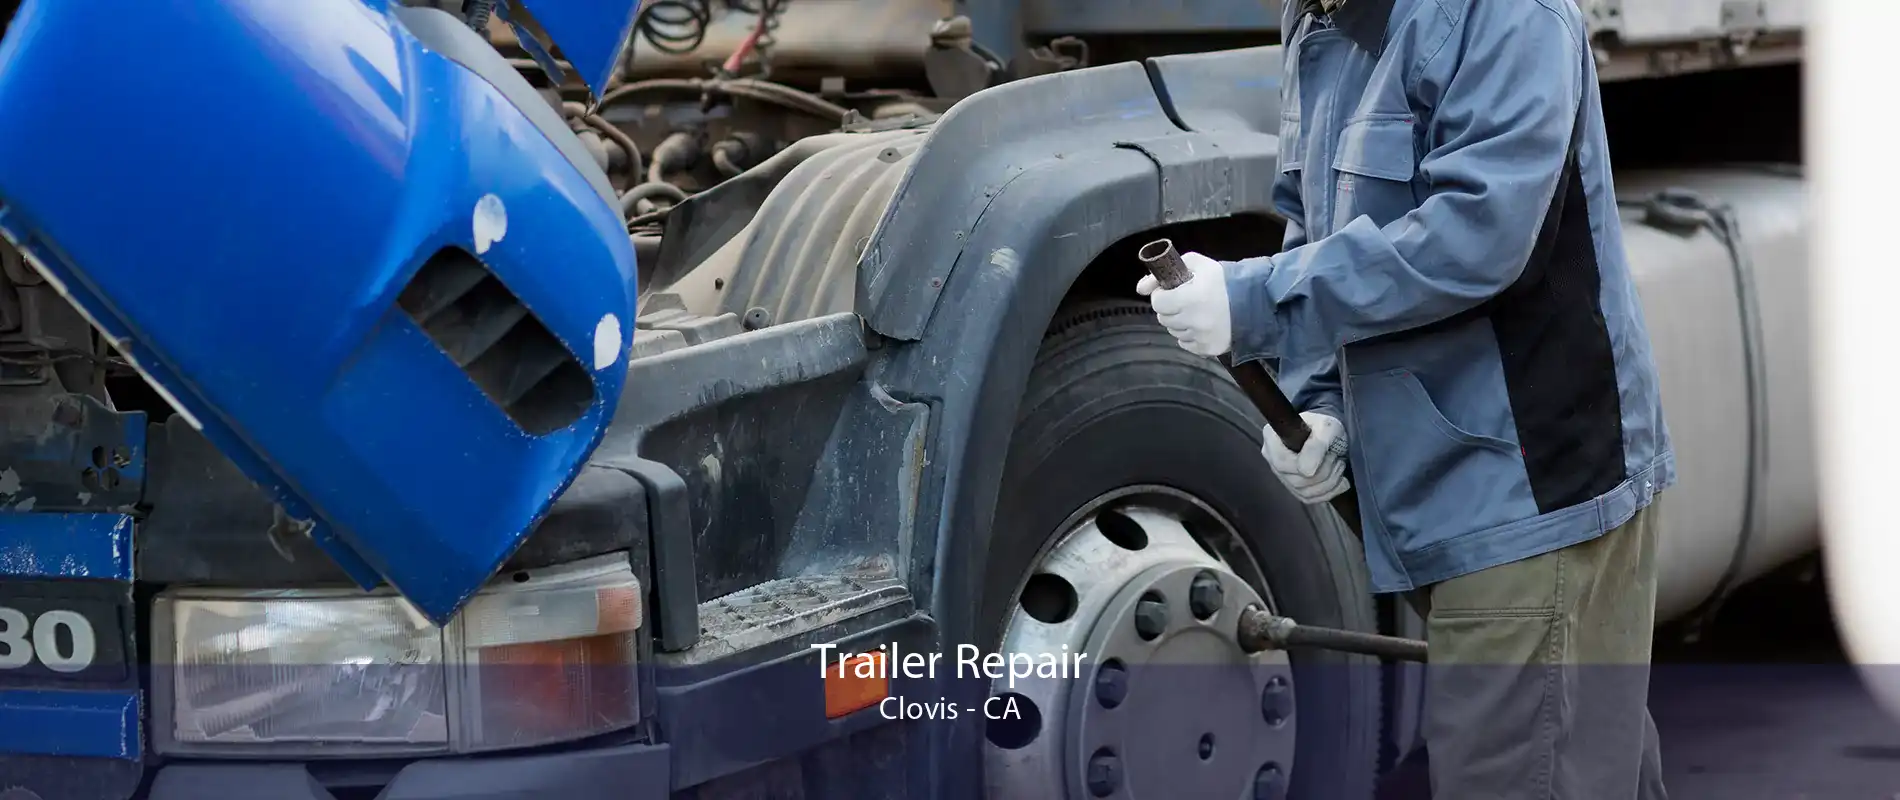 Trailer Repair Clovis - CA